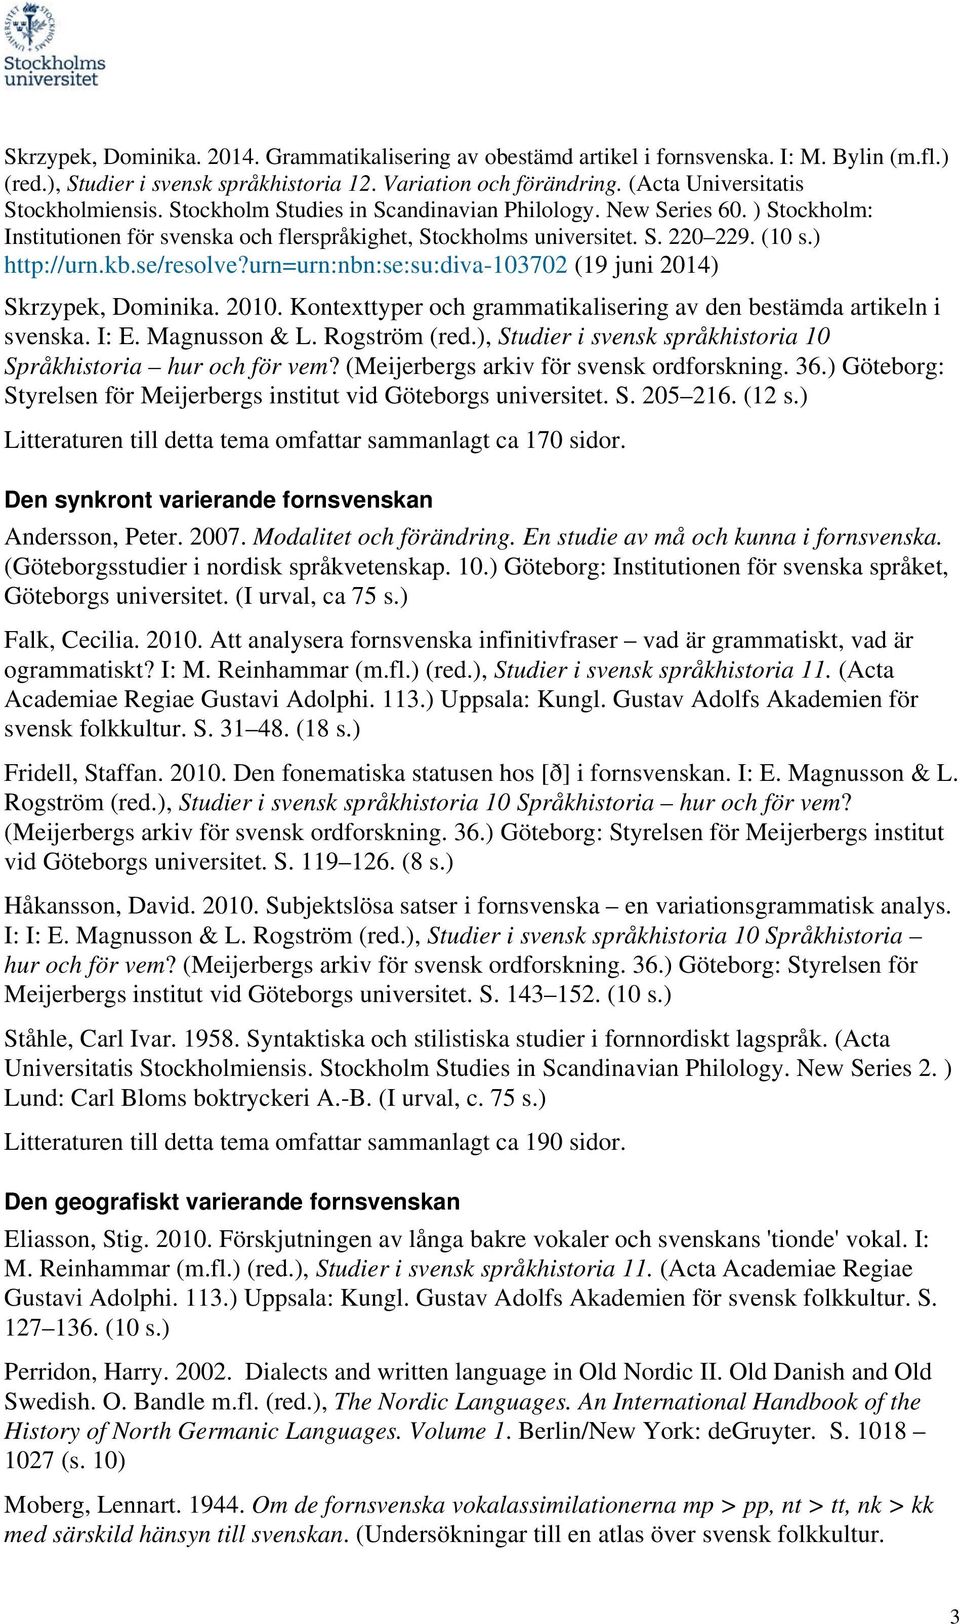 ) http://urn.kb.se/resolve?urn=urn:nbn:se:su:diva-103702 (19 juni 2014) Skrzypek, Dominika. 2010. Kontexttyper och grammatikalisering av den bestämda artikeln i svenska. I: E. Magnusson & L.